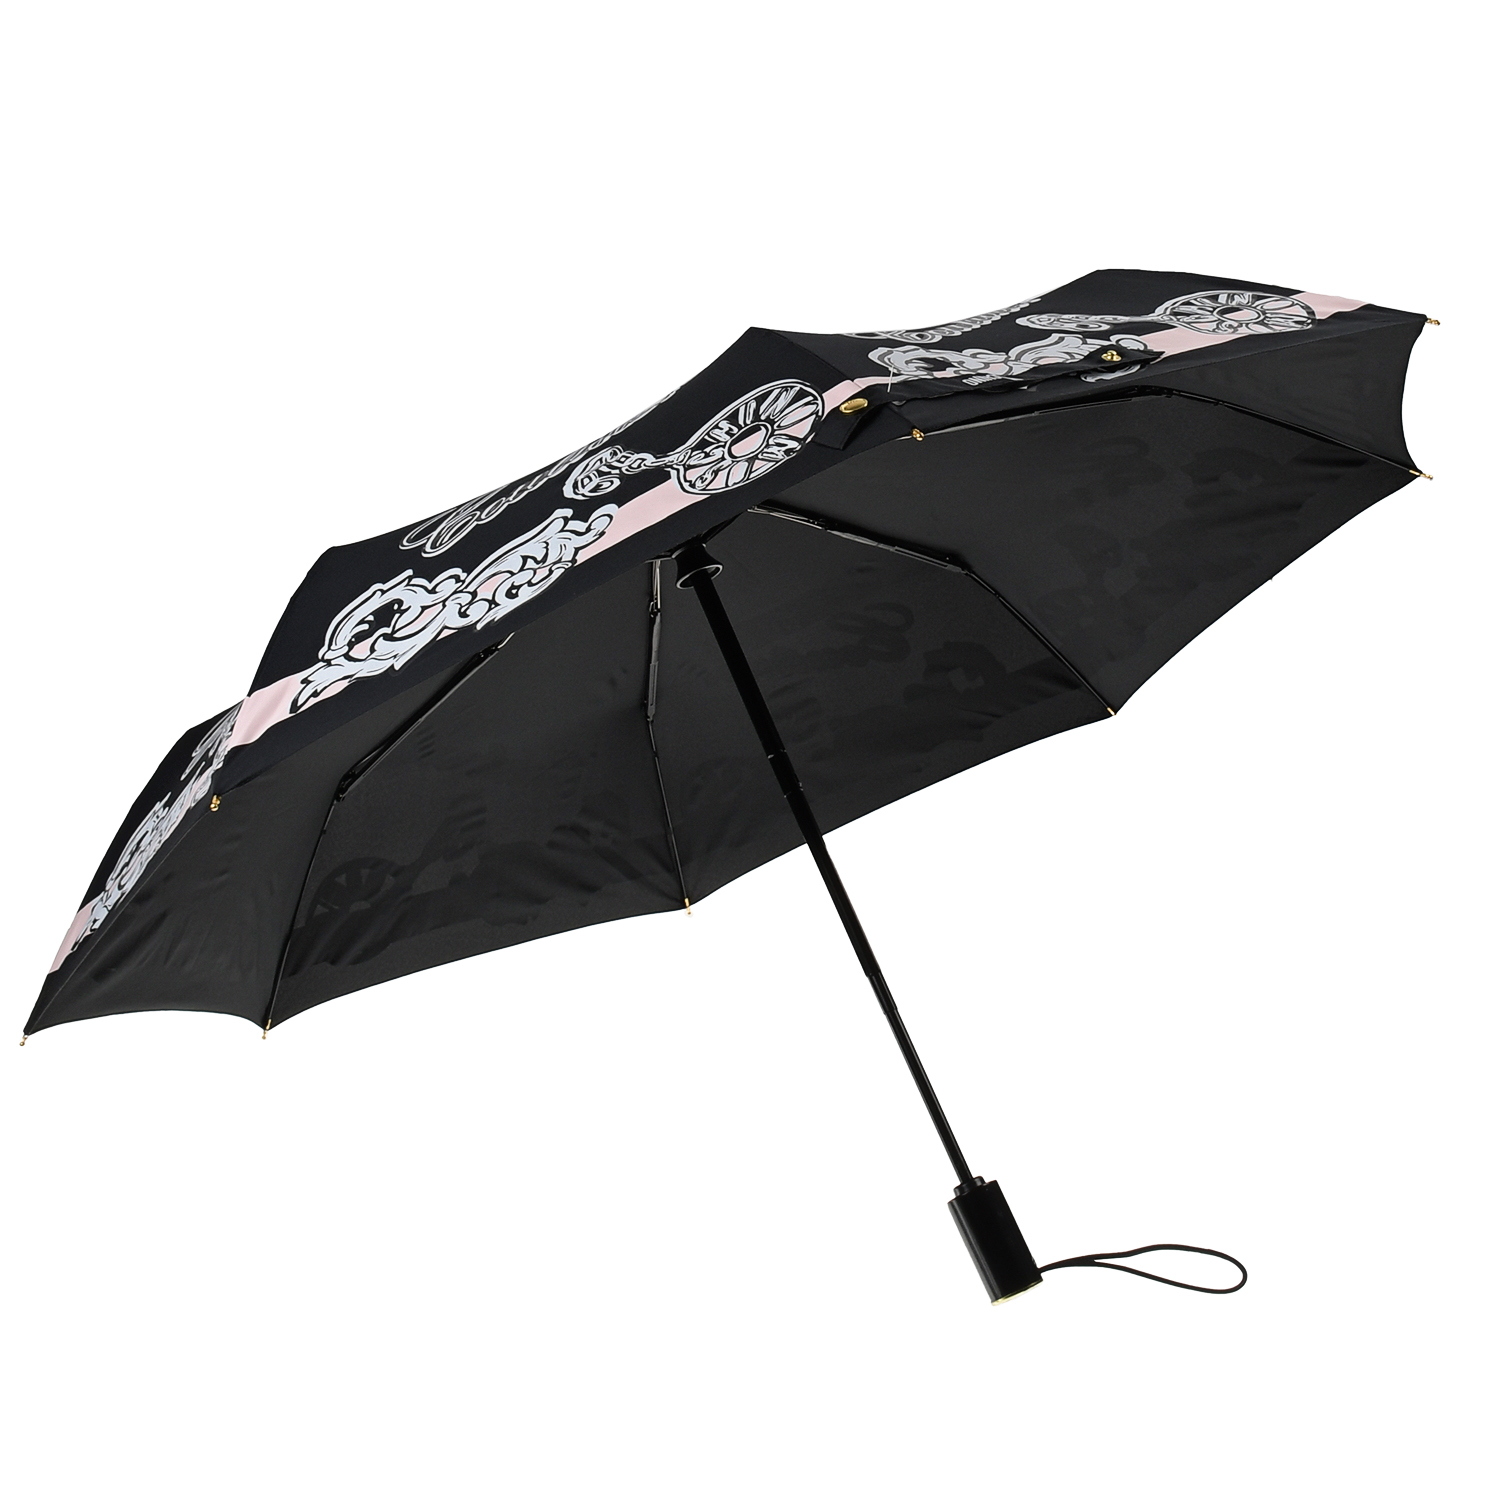 Черный зонт с текстовым принтом, 30 см Moschino детский, размер unica